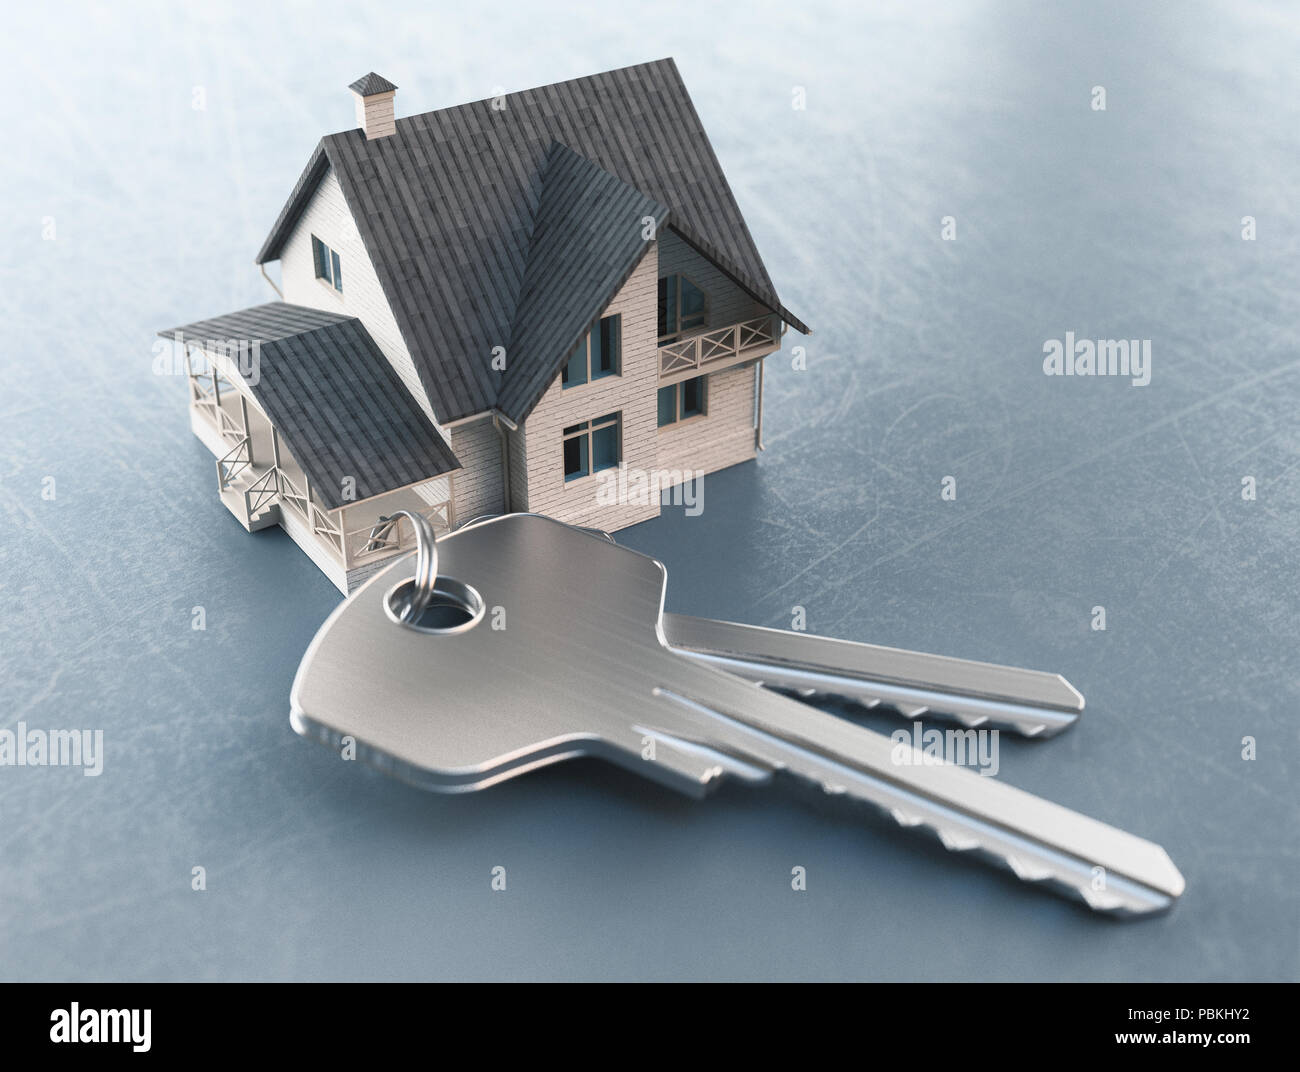 Keys of new house, 3drender illustration Stock Photo